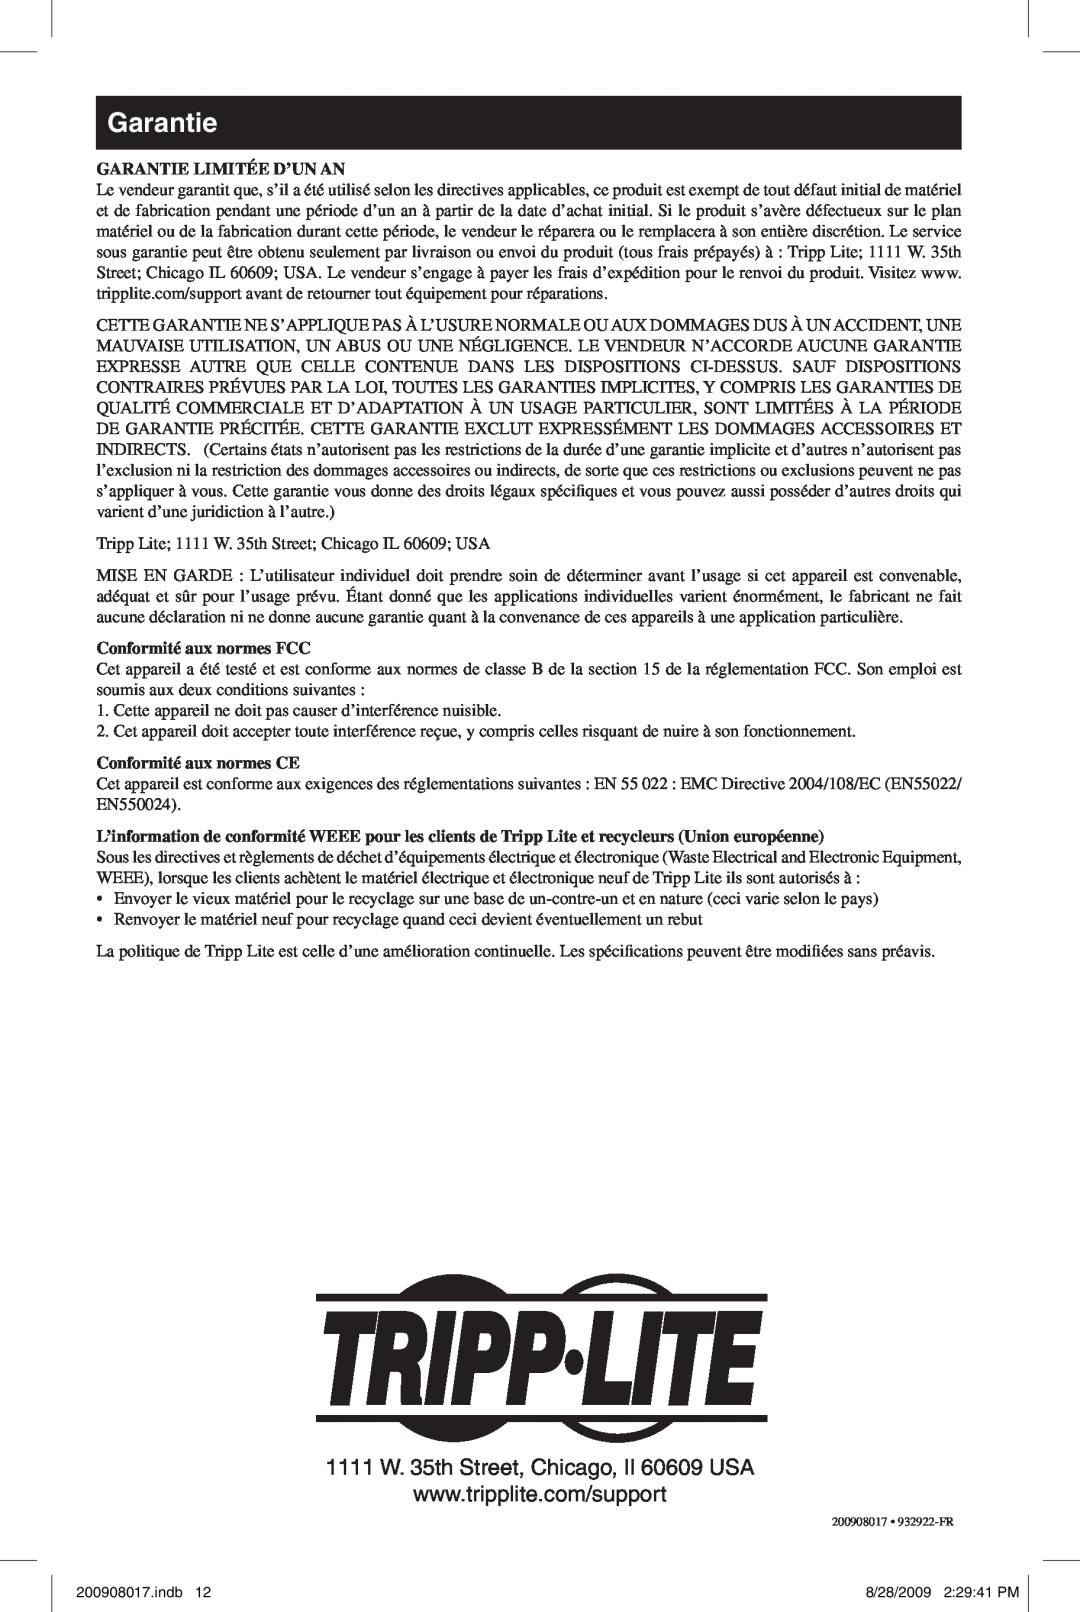 Tripp Lite U230-204-R warranty Garantie Limitée D’Un An, Conformité aux normes FCC, Conformité aux normes CE 